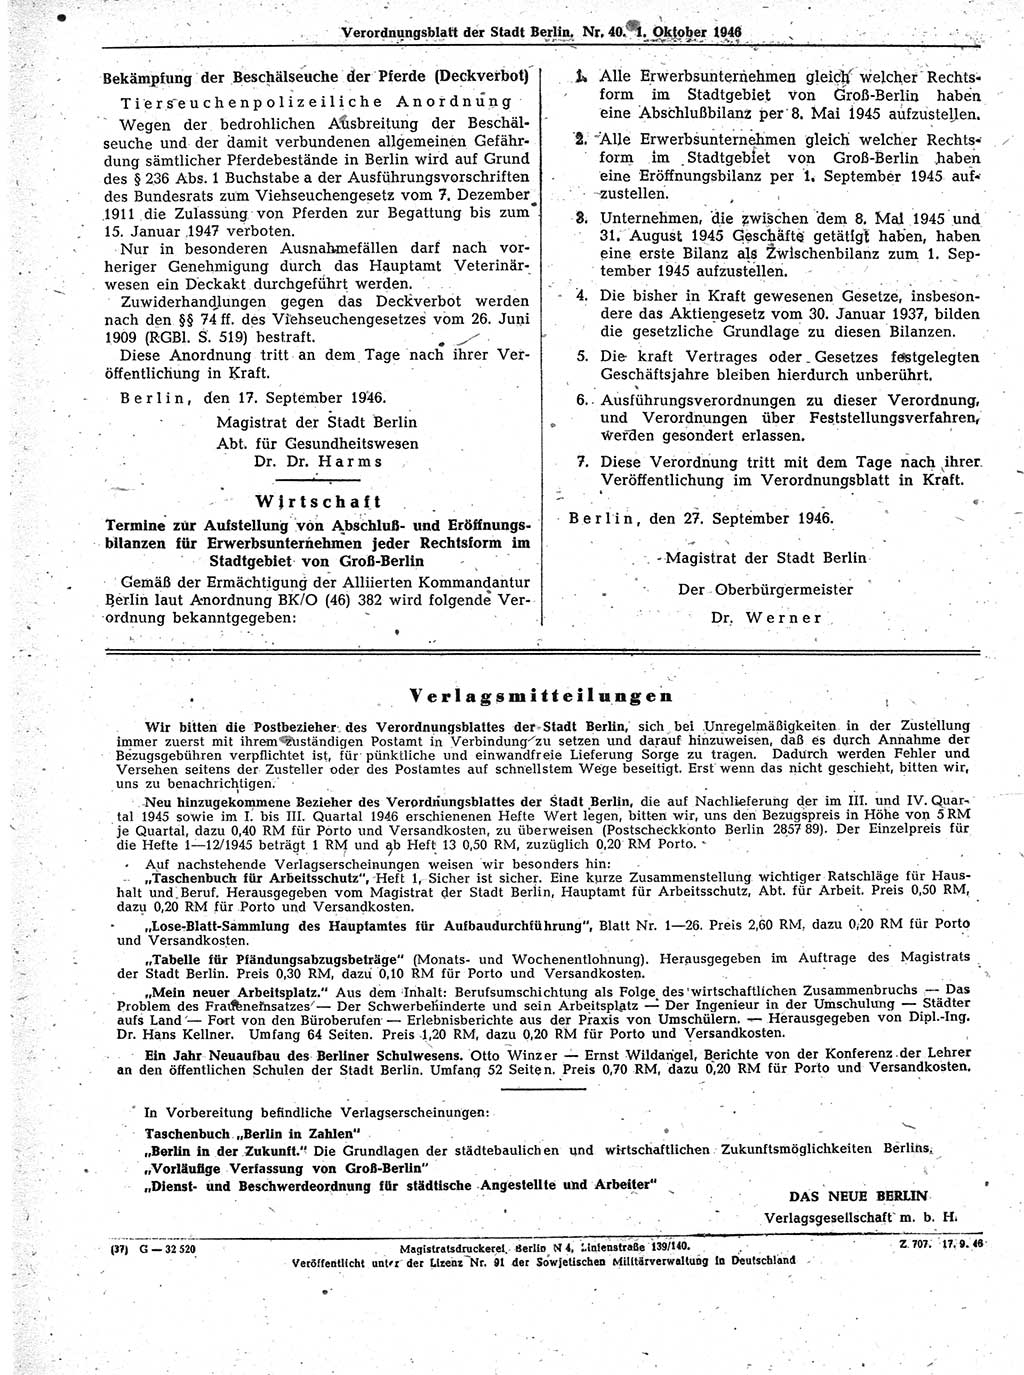 Verordnungsblatt (VOBl.) der Stadt Berlin, für Groß-Berlin 1946, Seite 360 (VOBl. Bln. 1946, S. 360)